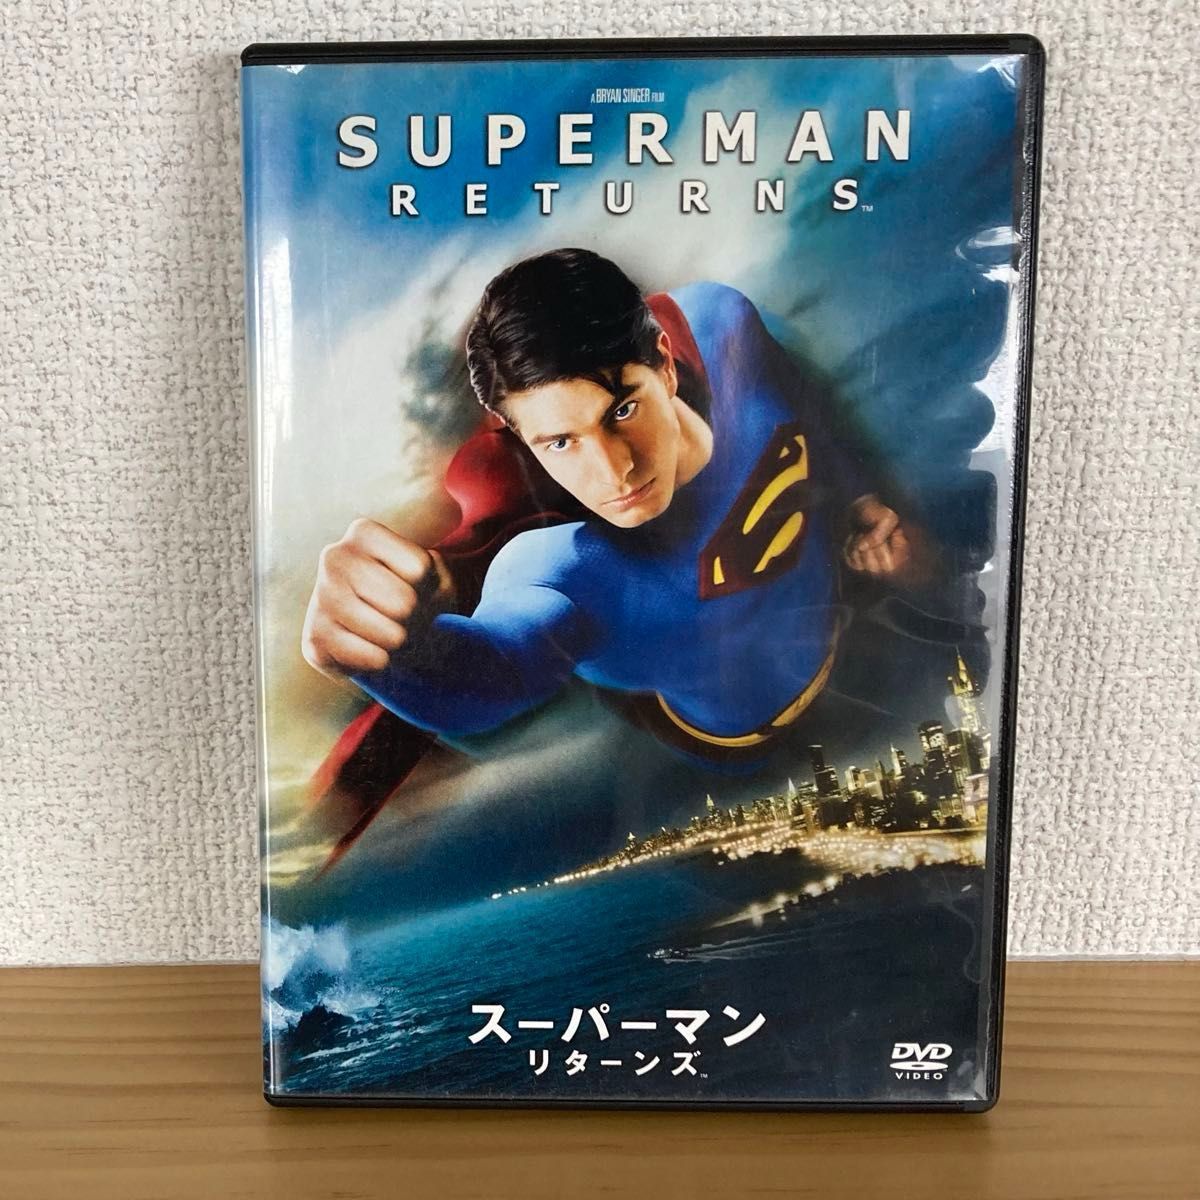 セル版DVD スーパーマン リターンズ('06米) ケイト・ボスワース主演 日本語吹替あり